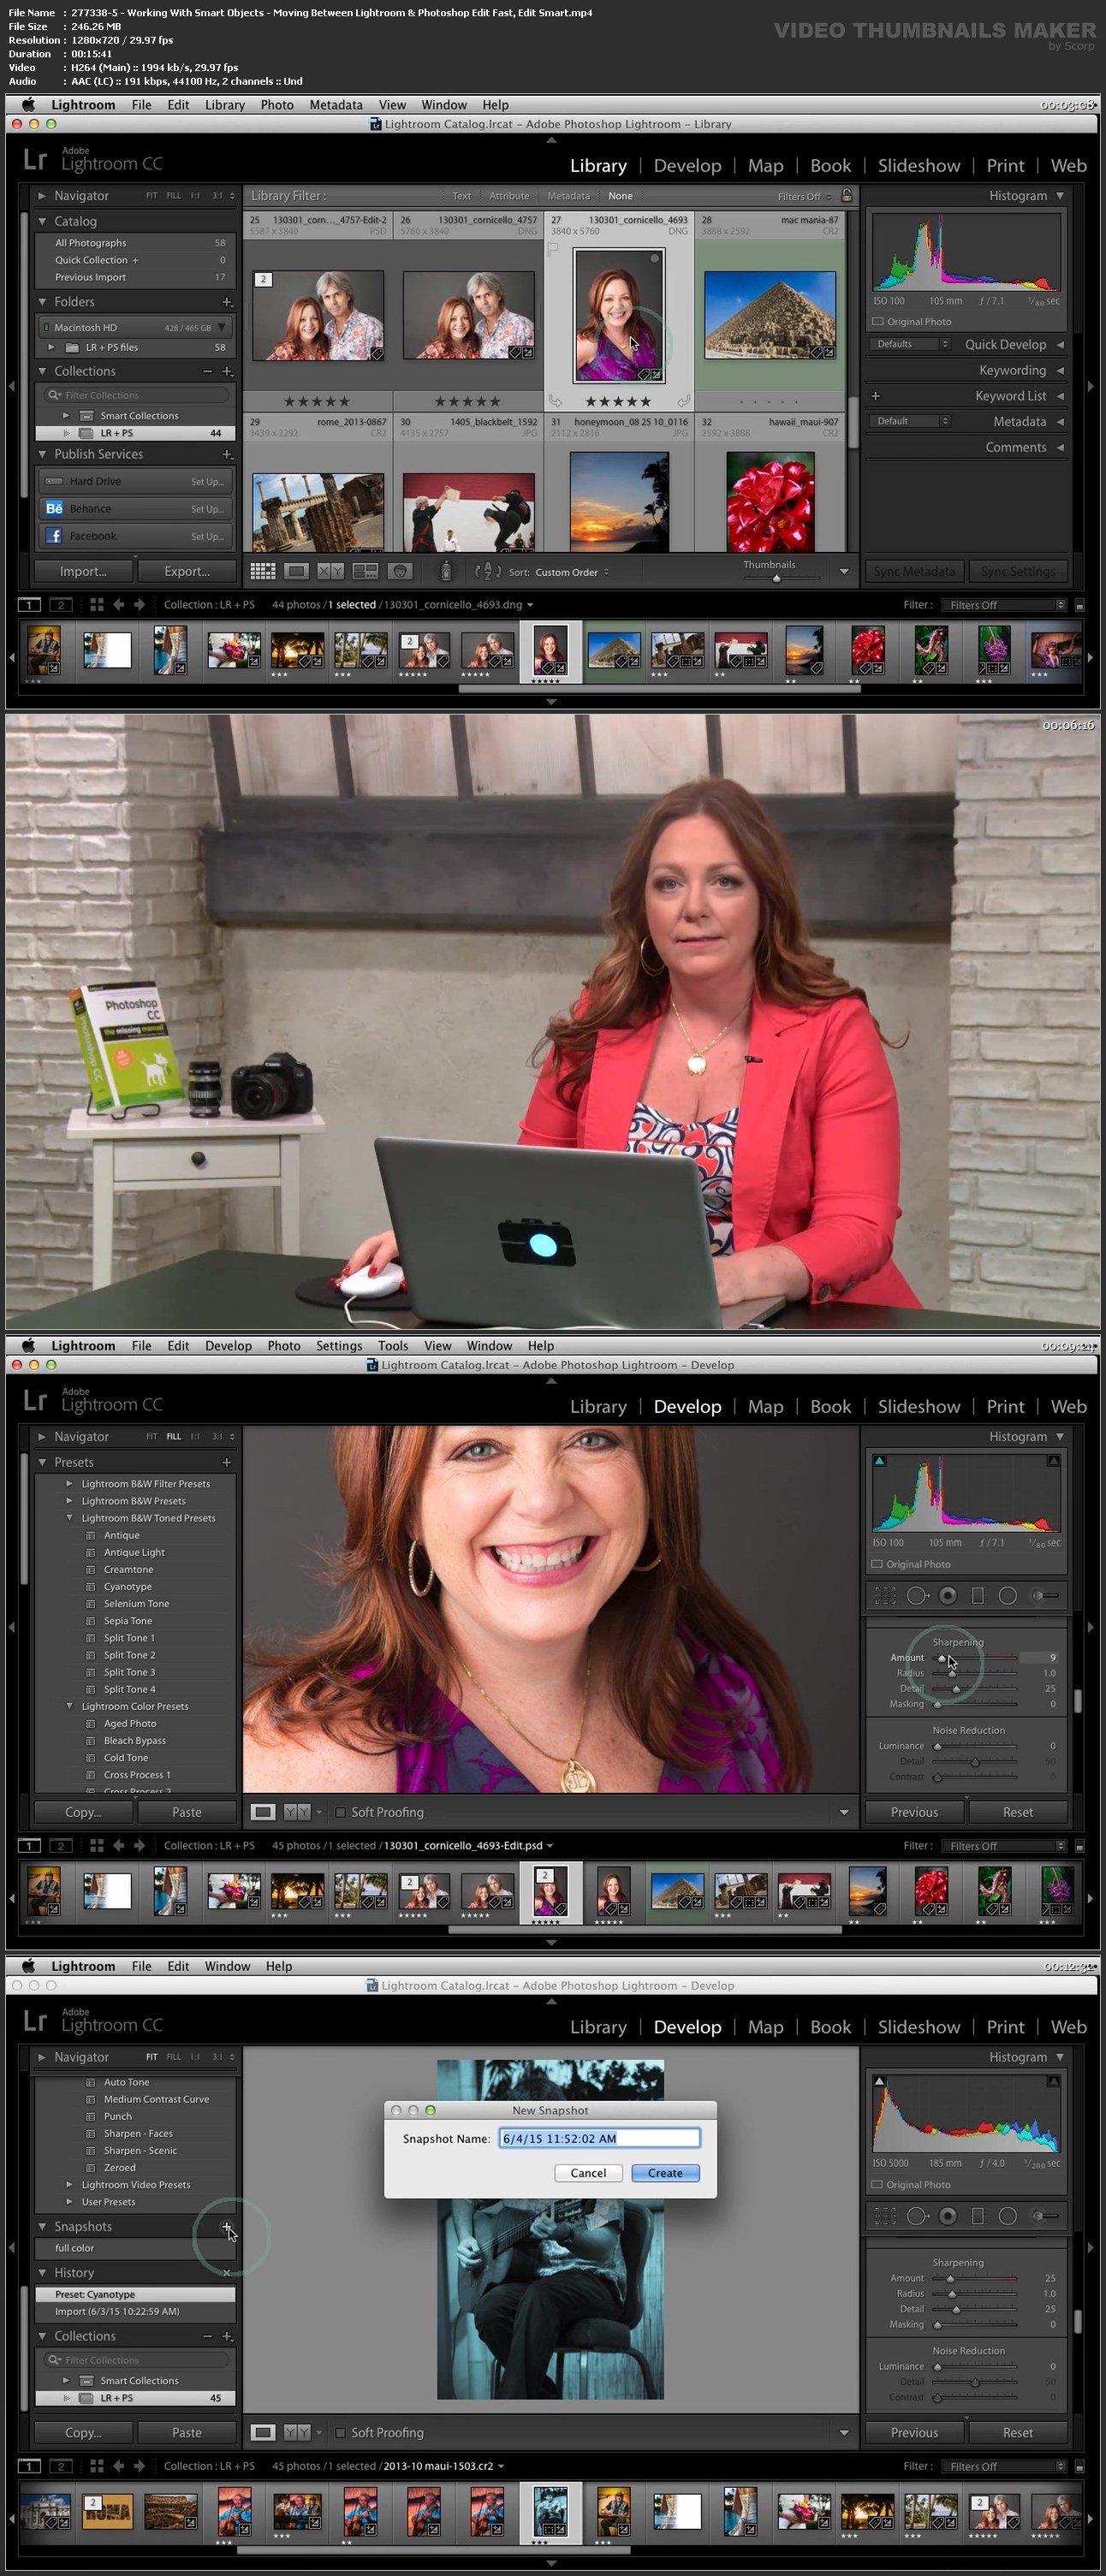 Moving Between Lightroom & Photoshop: Edit Fast, Edit Smart